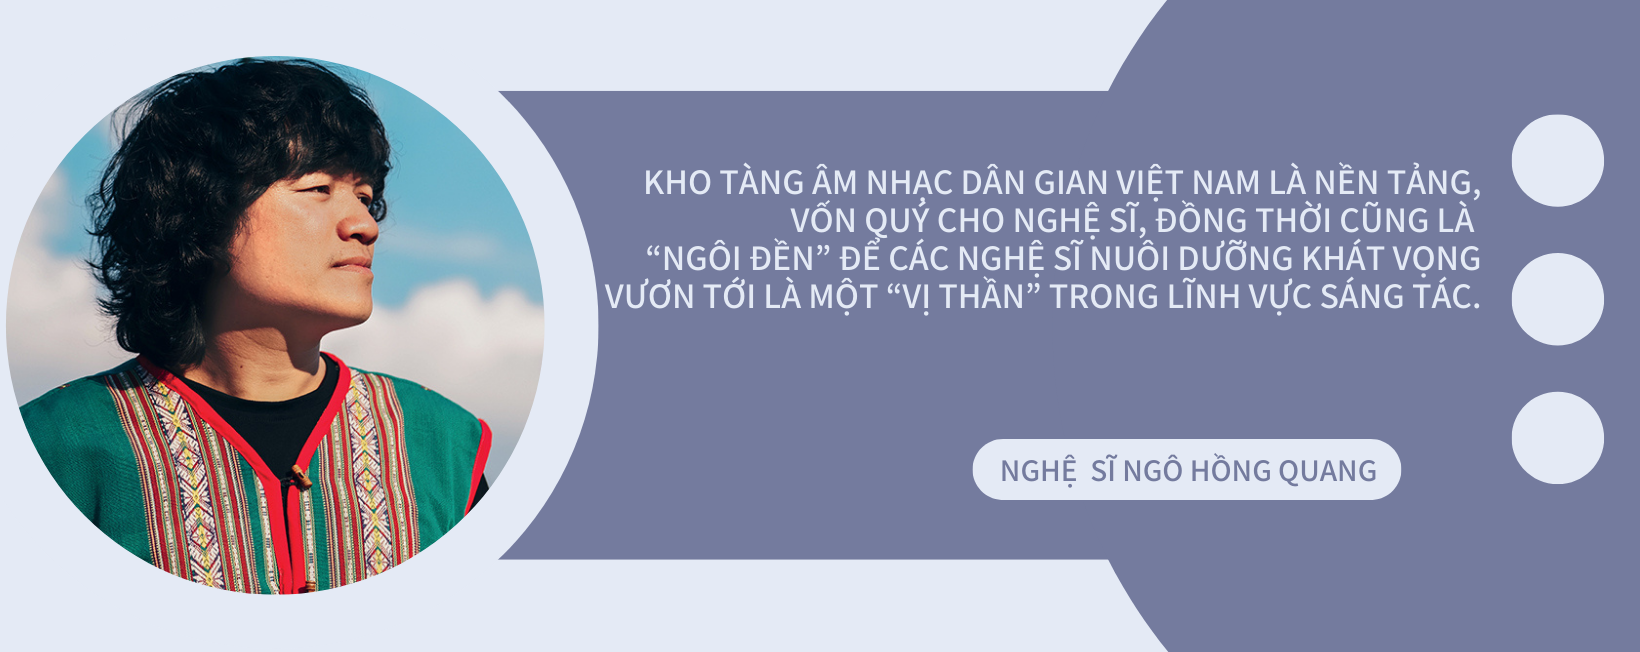 Nghệ sĩ Ngô Hồng Quang: Tri thức dân gian là bài học lớn của tôi - Ảnh 7.